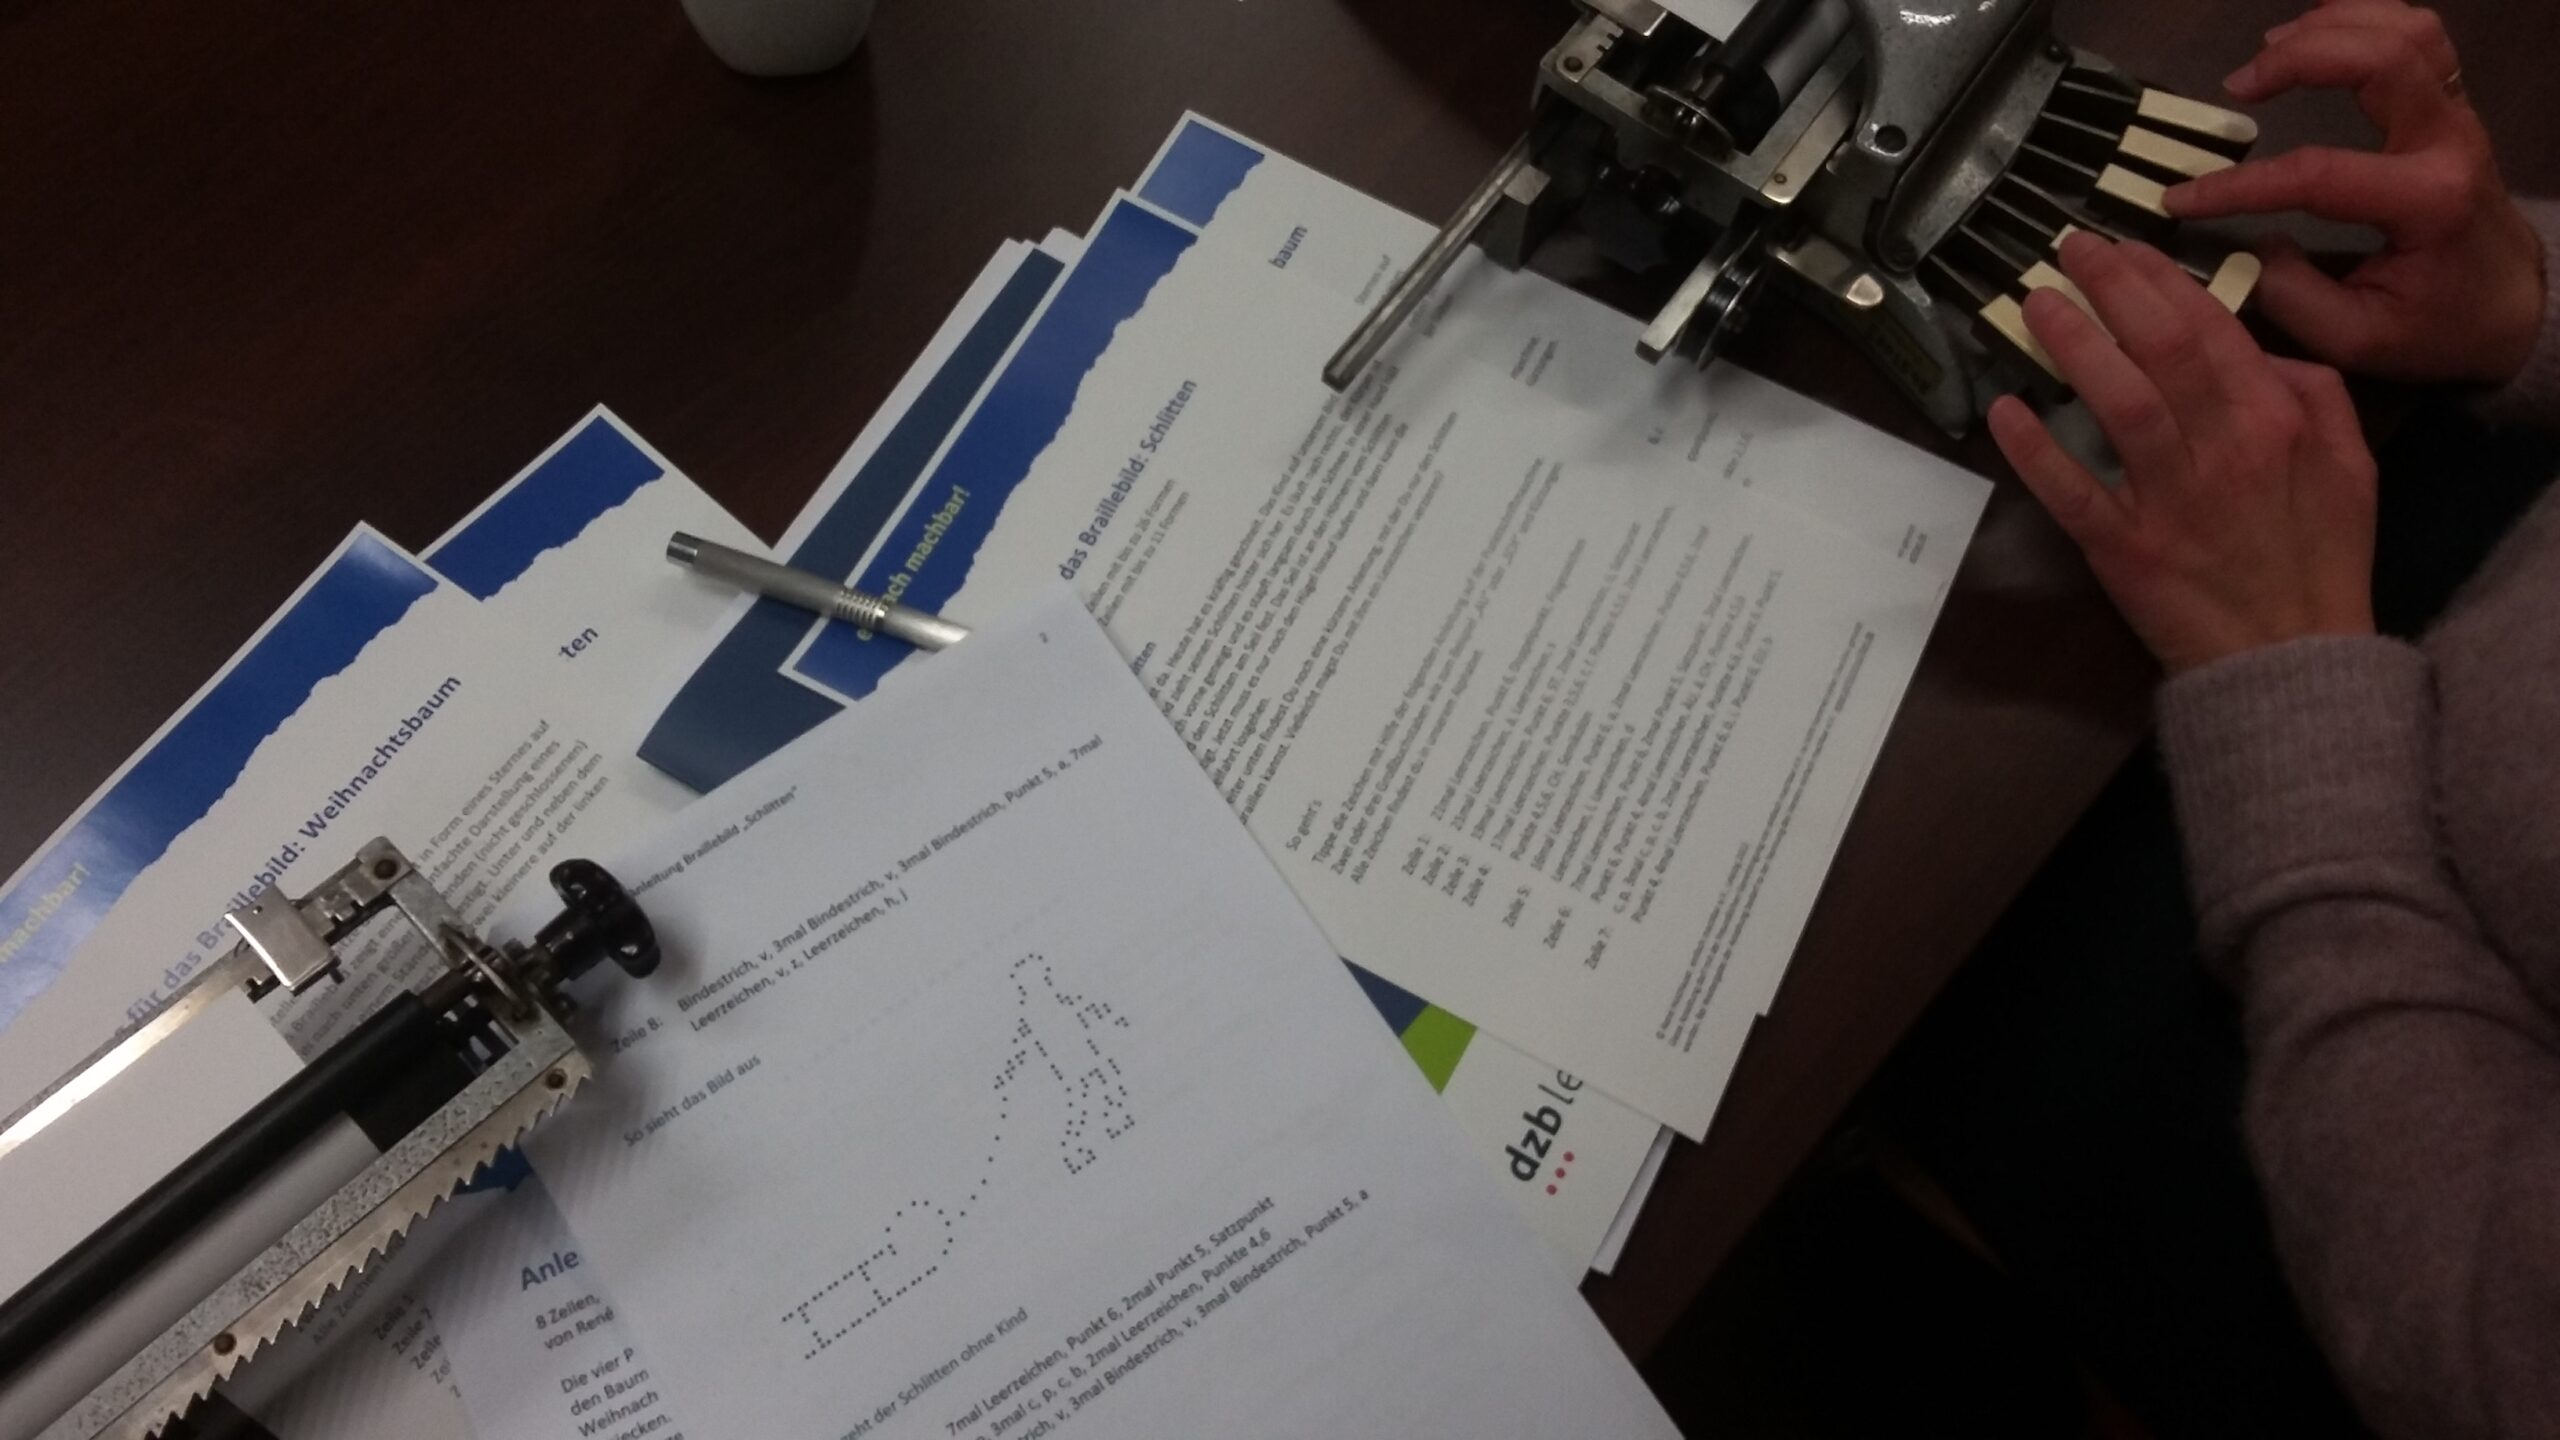 Workshopunterlagen und Arbeitsmaterialien liegen auf dem Tisch neben einer Punktschriftmaschine.